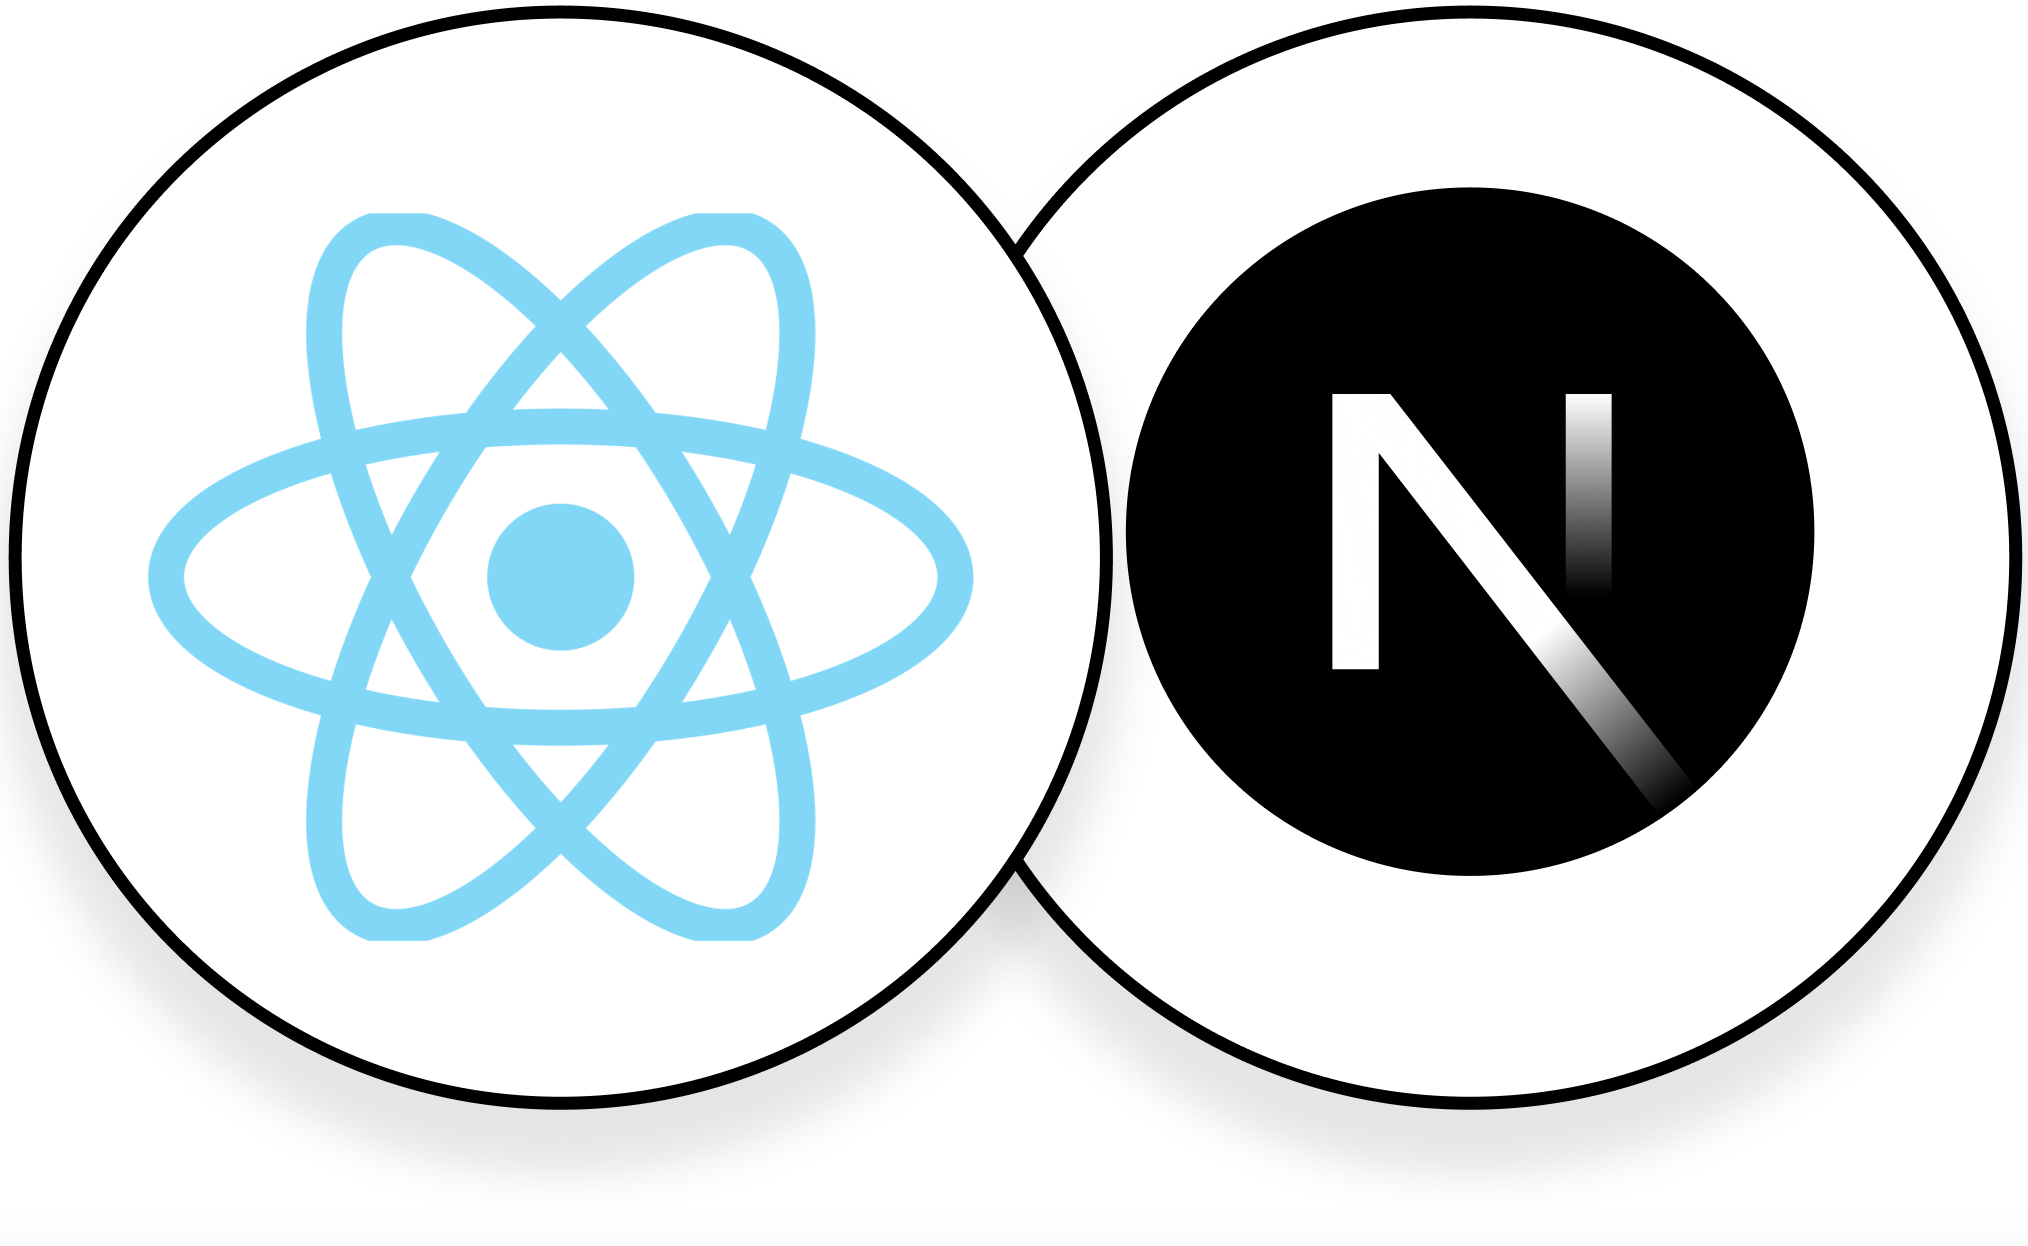 React and Next.js logos together